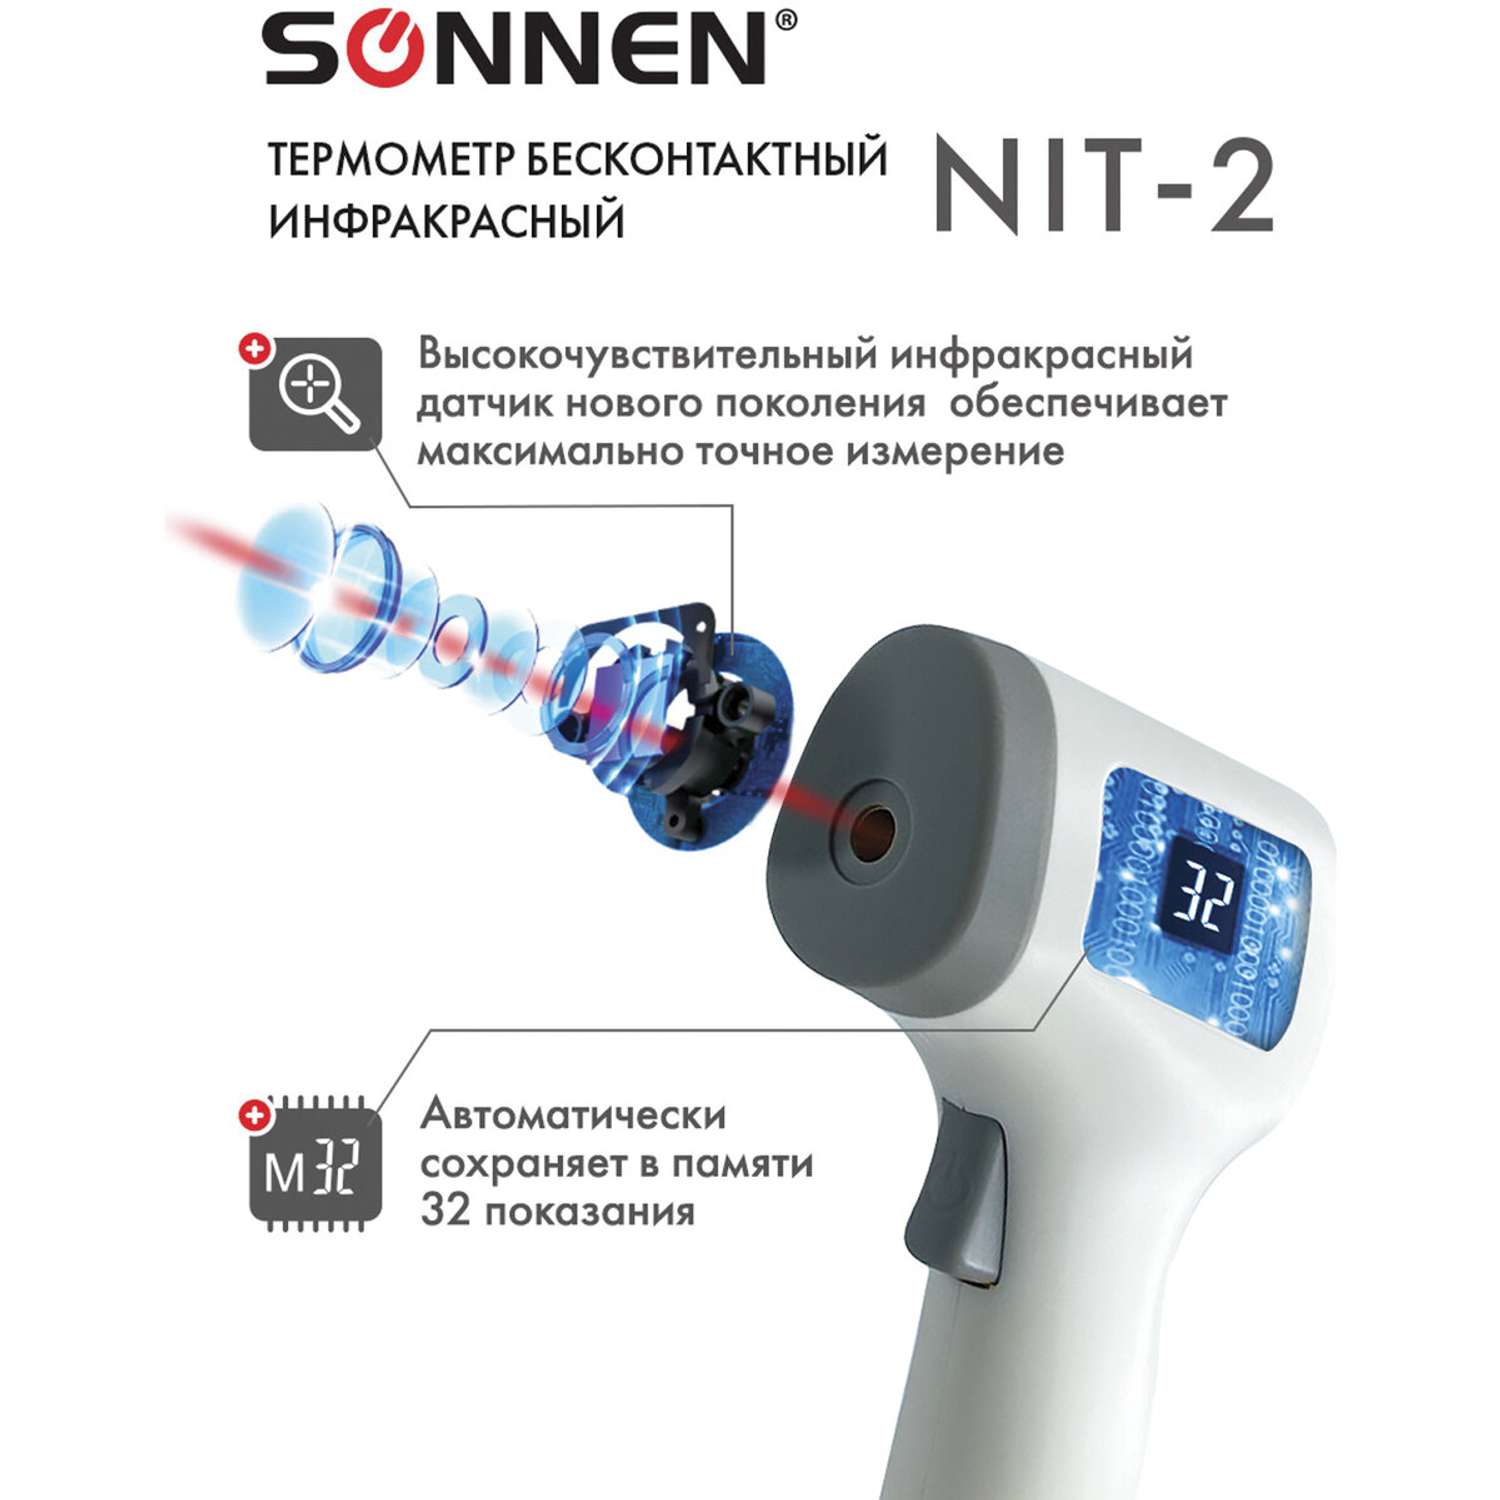 Термометр Sonnen бесконтактный инфракрасный NIT-2 GP-300 электронный - фото 4